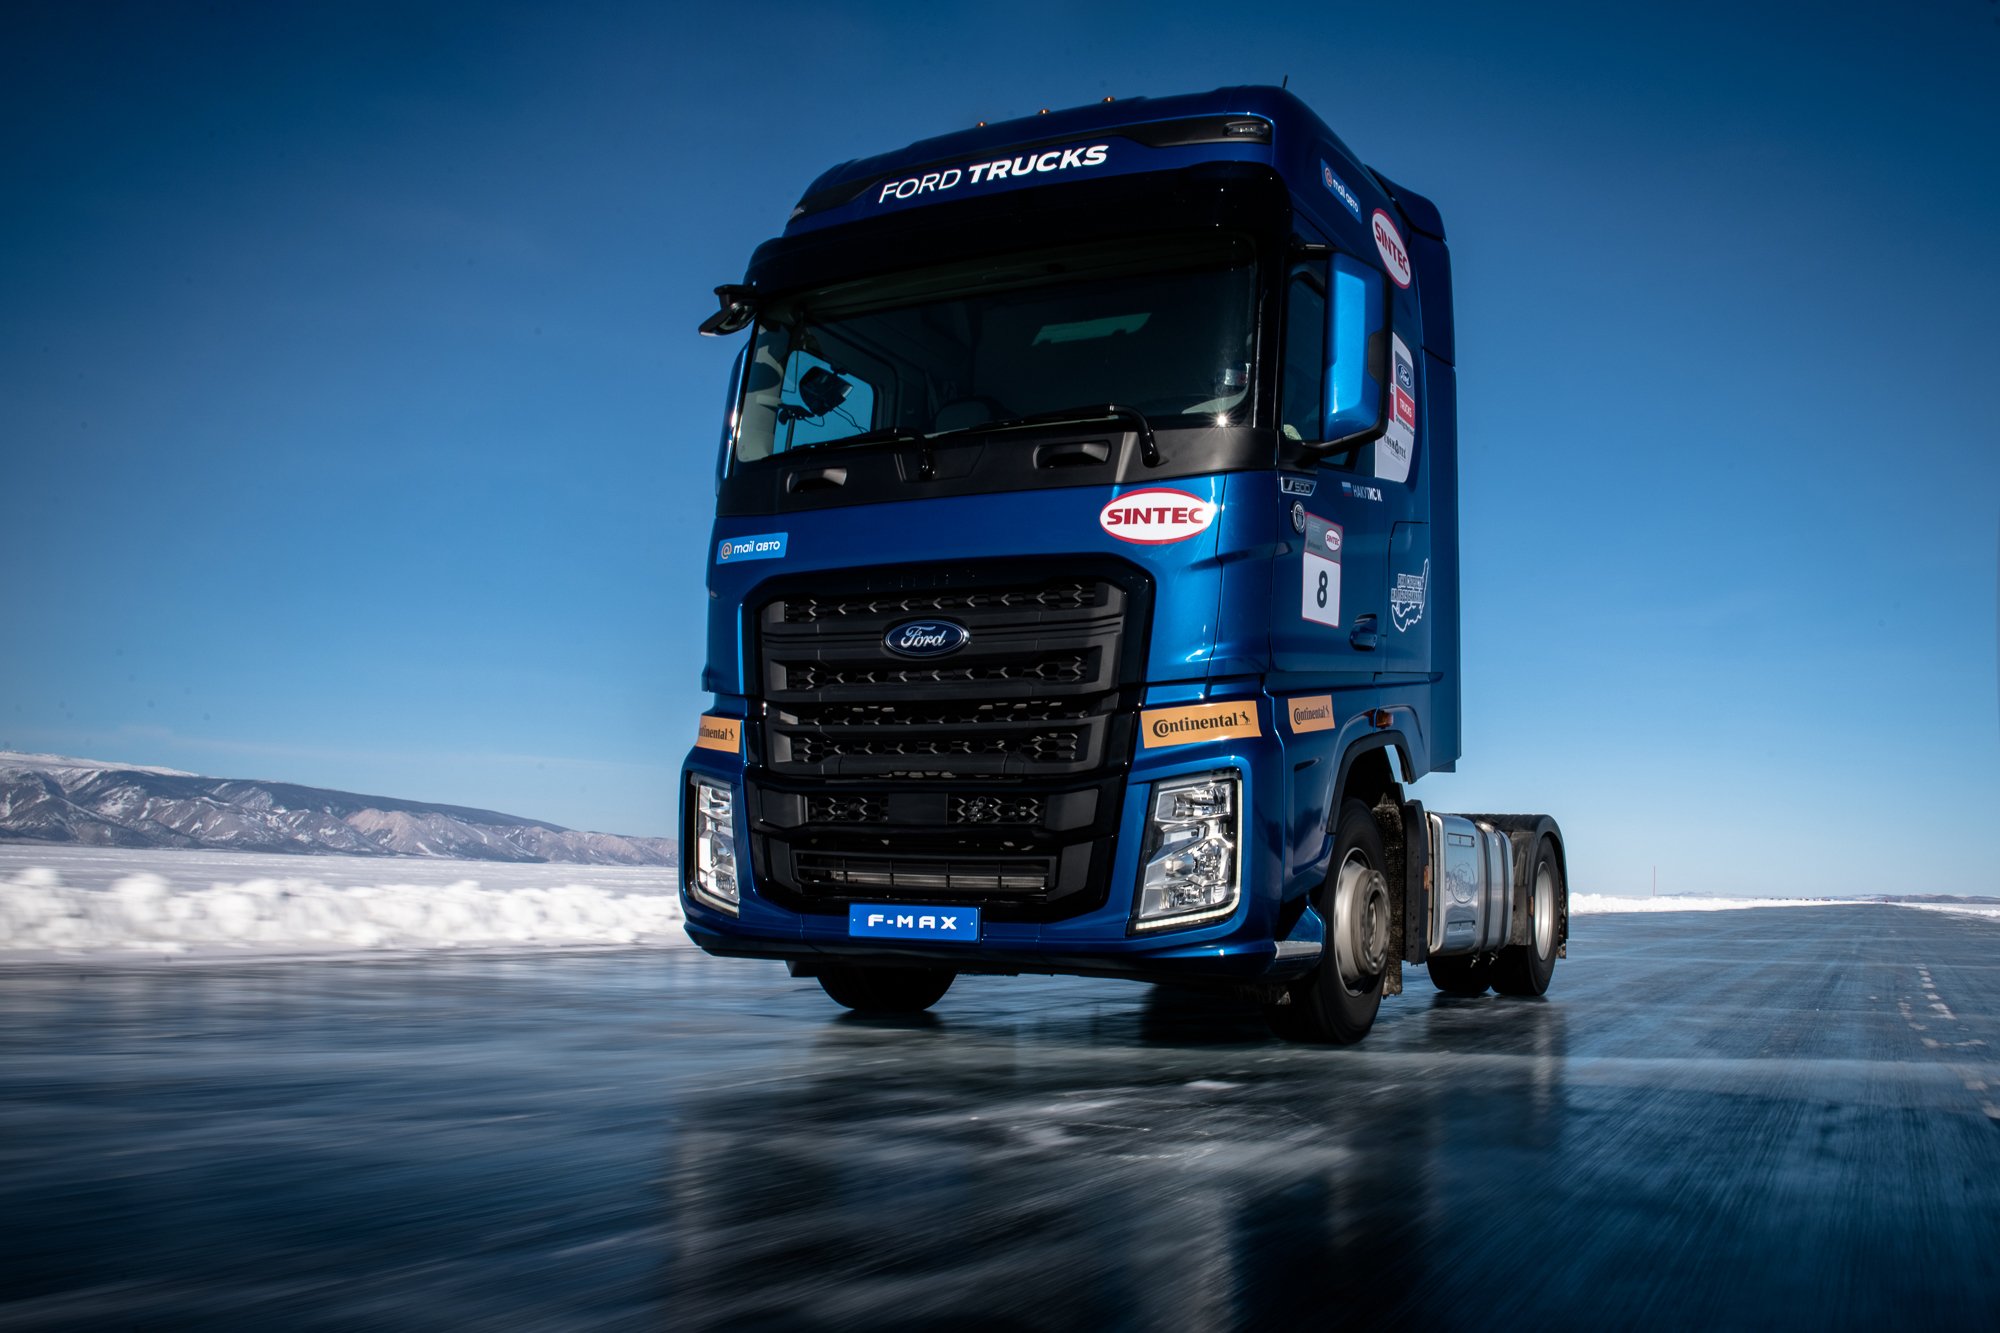 Флагманский грузовик Ford Trucks протестировали на льду Байкала